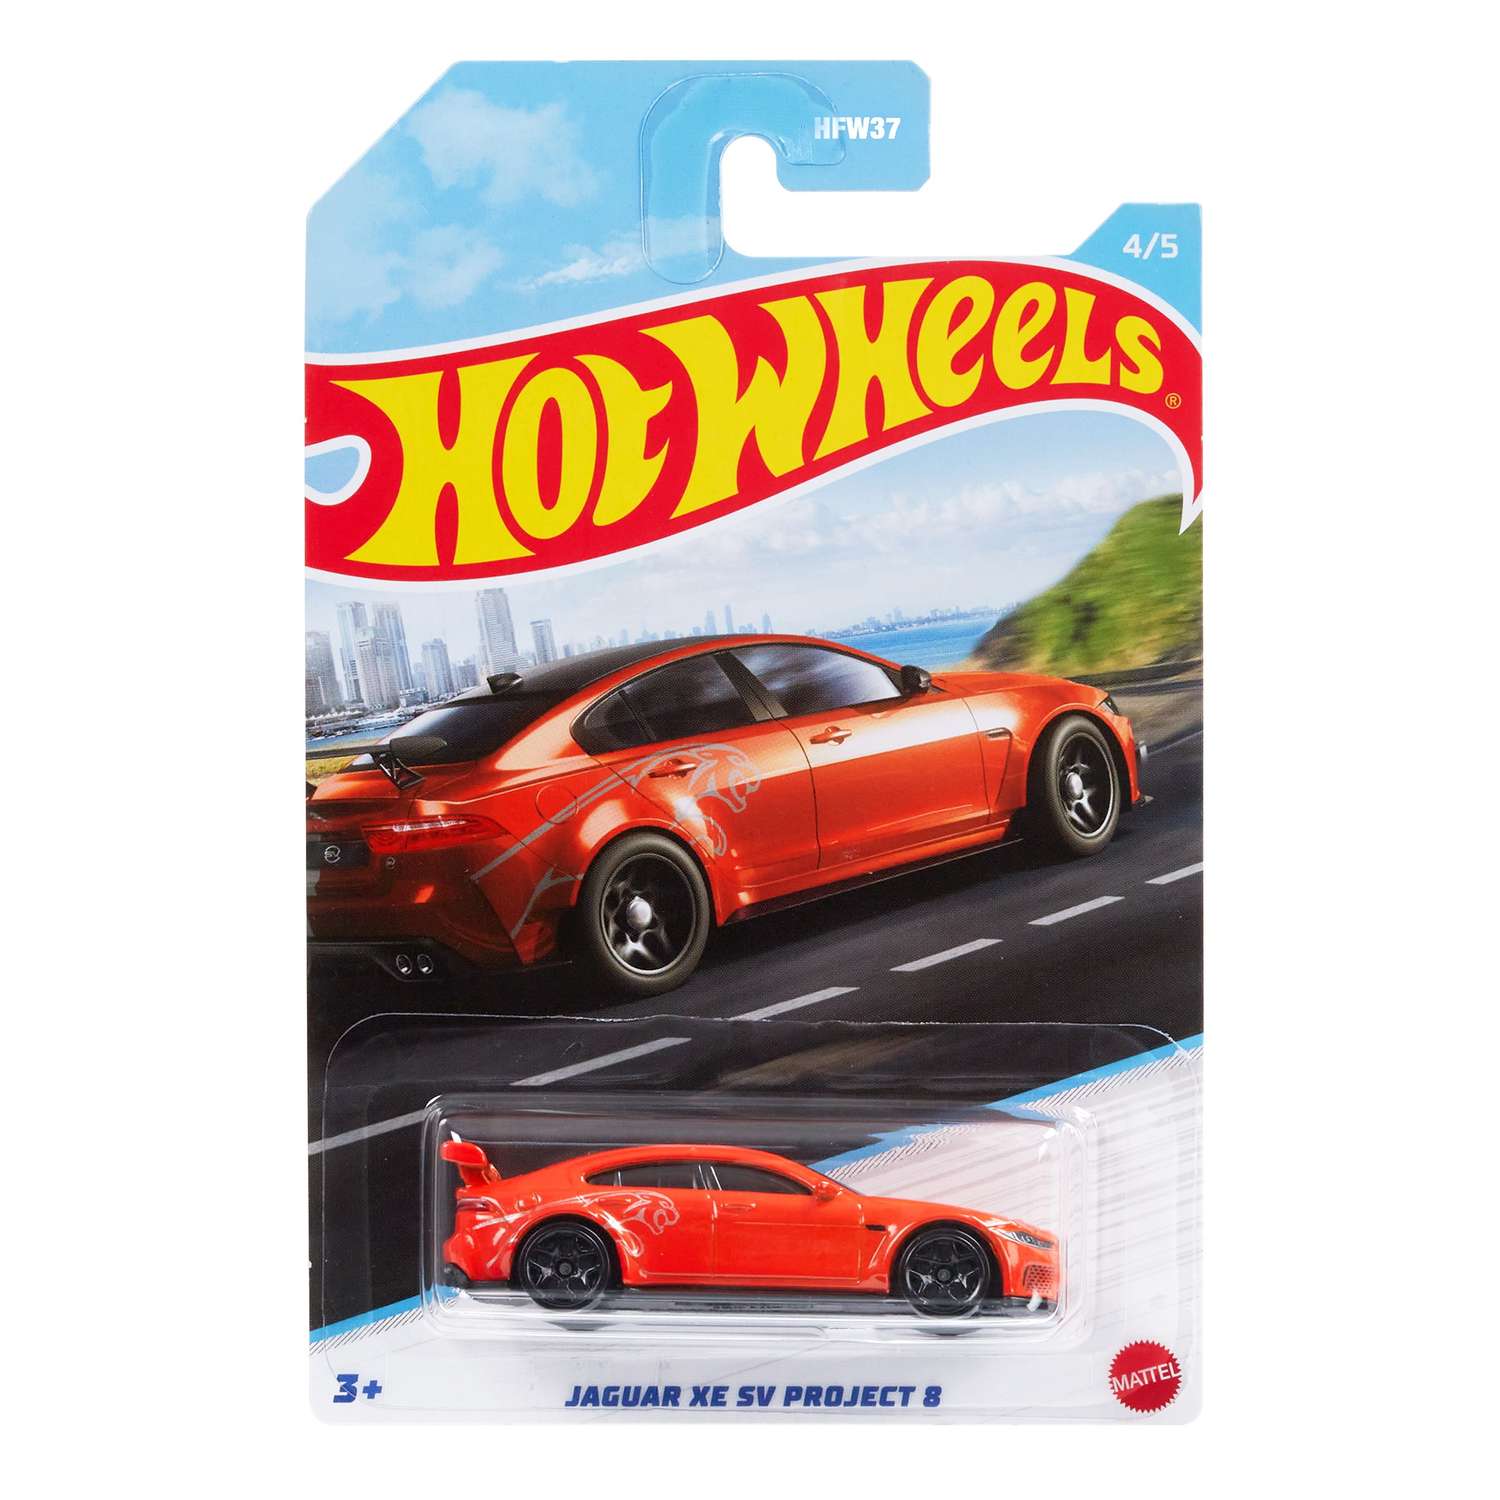 Машинка Hot Wheels Автомотив Люксовые седаны в ассортименте HFW37 HFW37 - фото 23